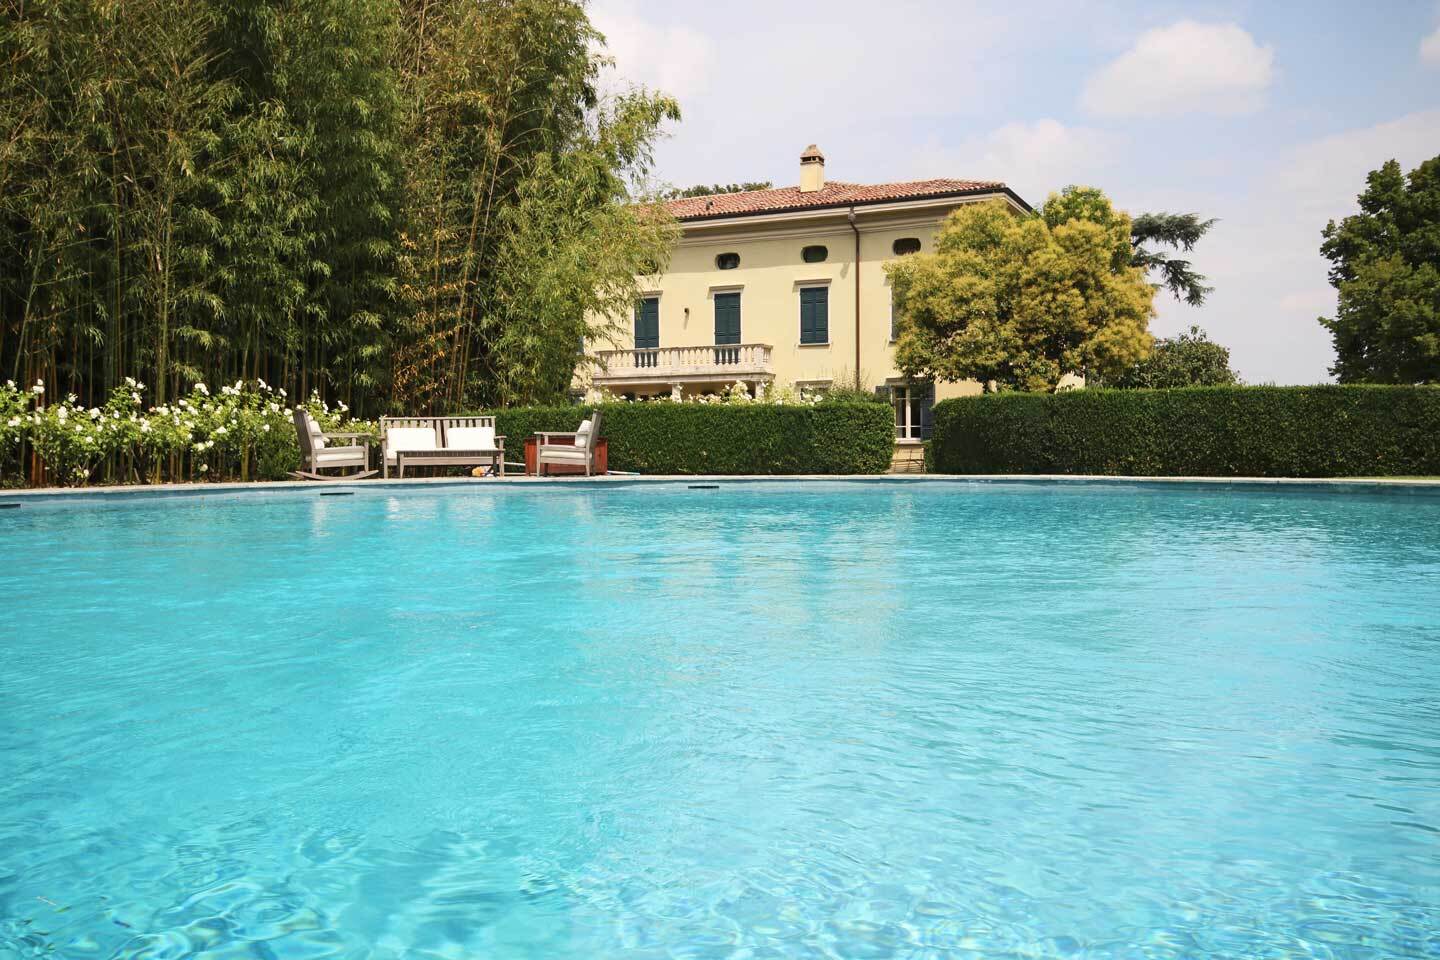 Se vende villa in zona tranquila Collecchio Emilia-Romagna